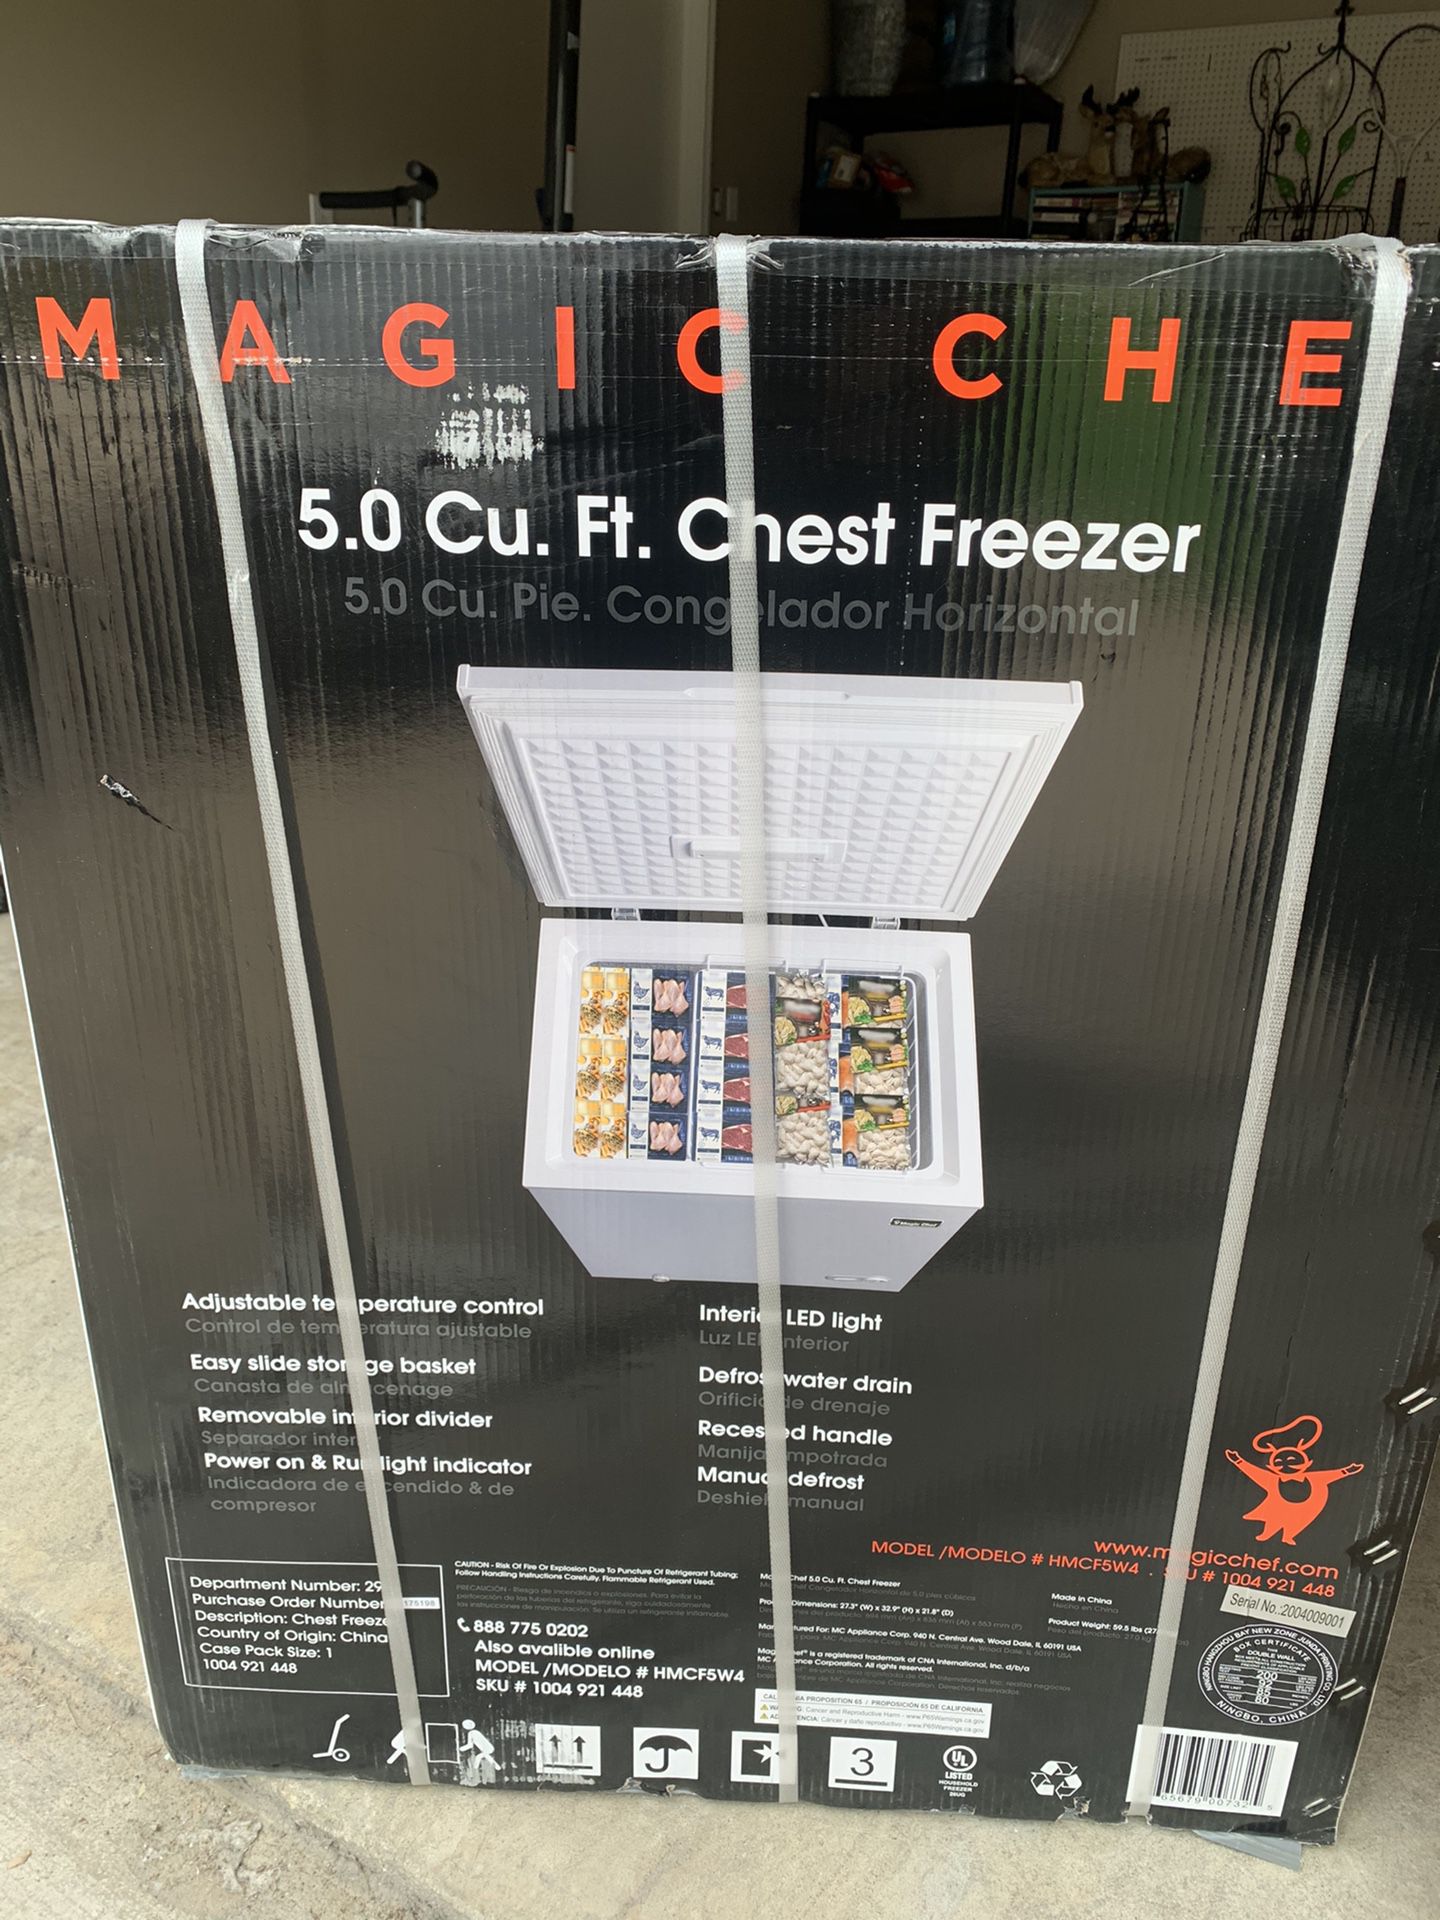 Chest freezer 5.0 cubic